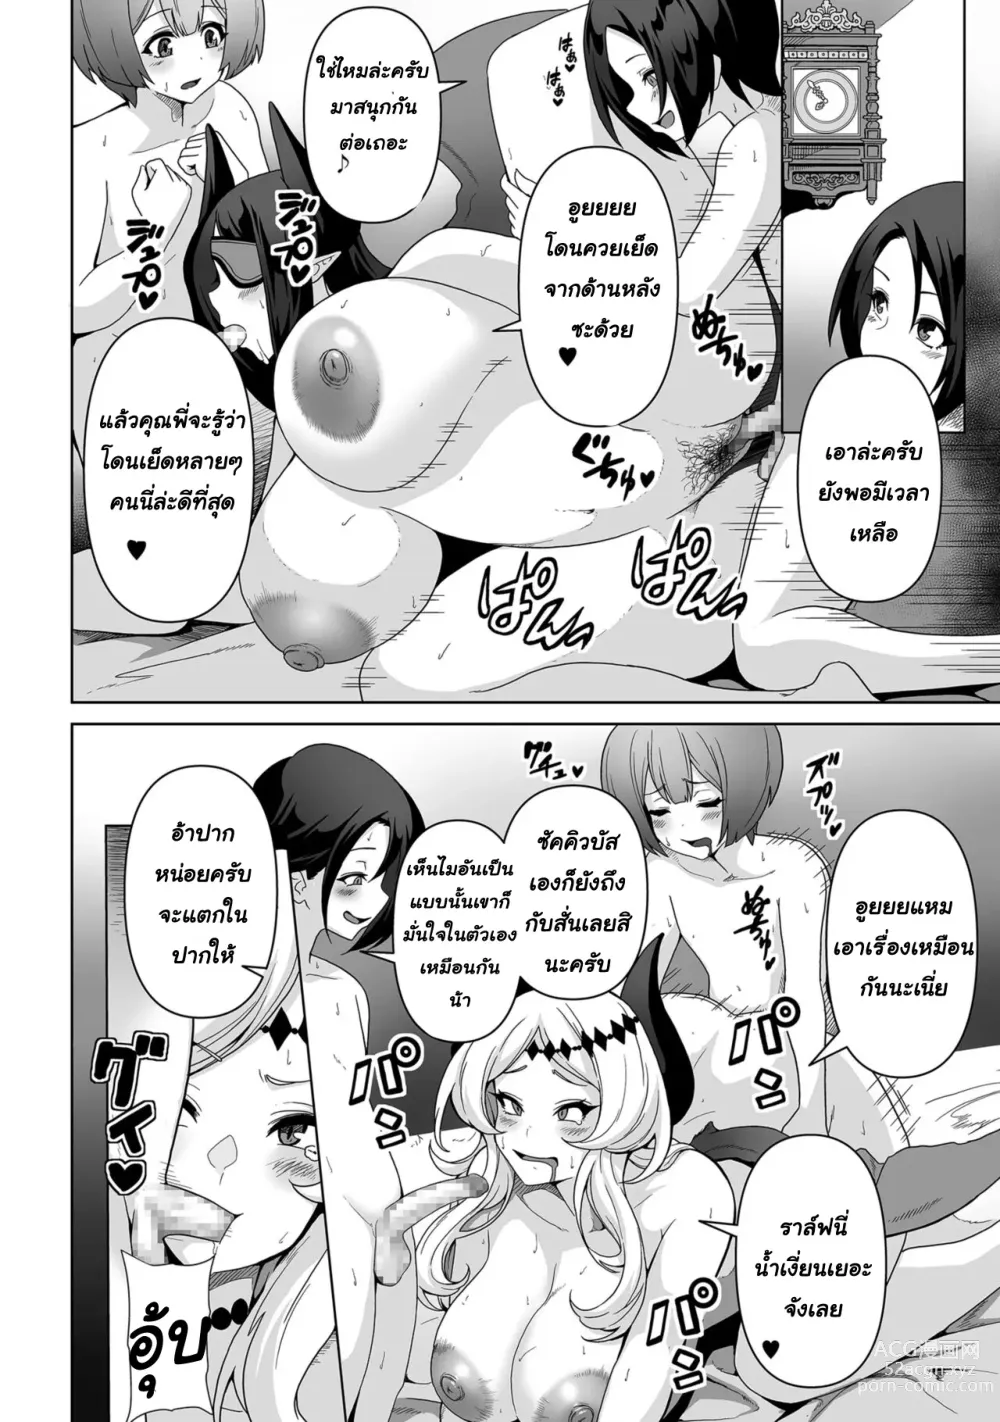 Page 19 of manga Sakyubasu kingudamu dai isekai kara kita shounen 2